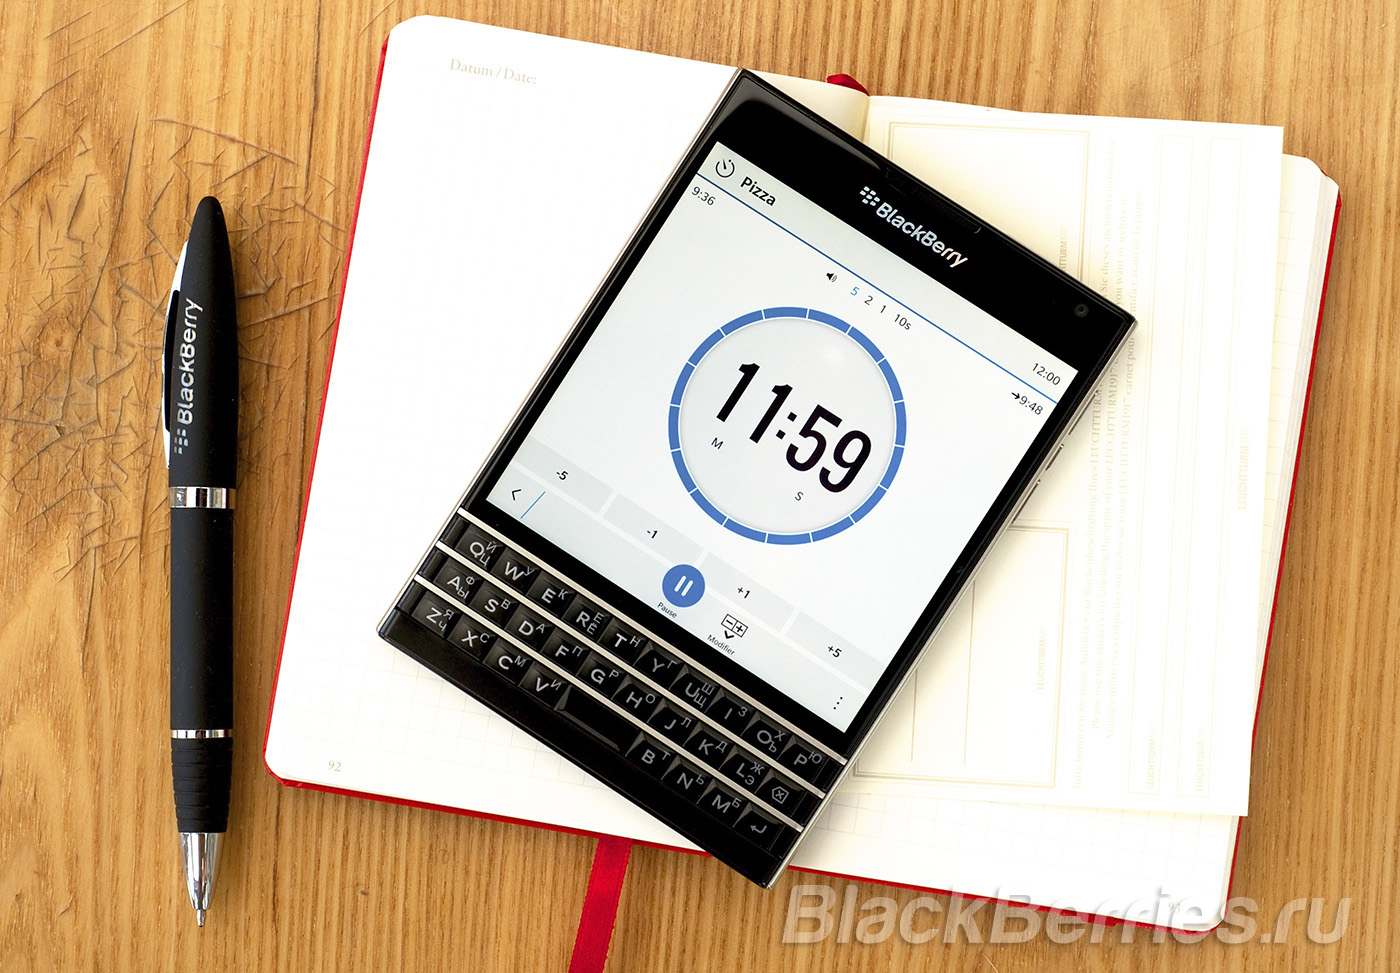 BlackBerry-Passport-App-17-07-07